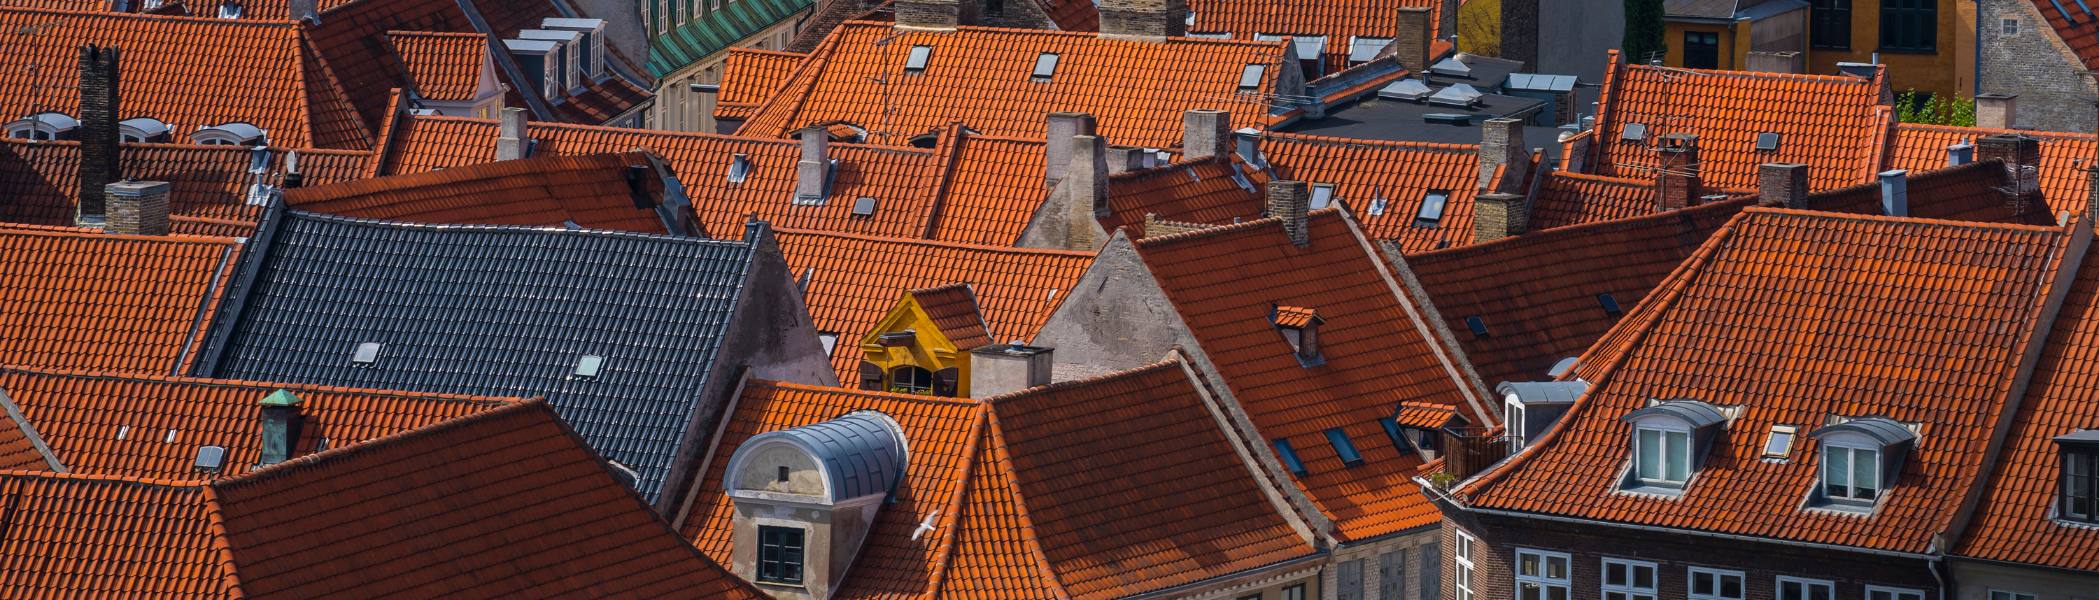 Imagen de techos de casas en Copenhague, Dinamarca.